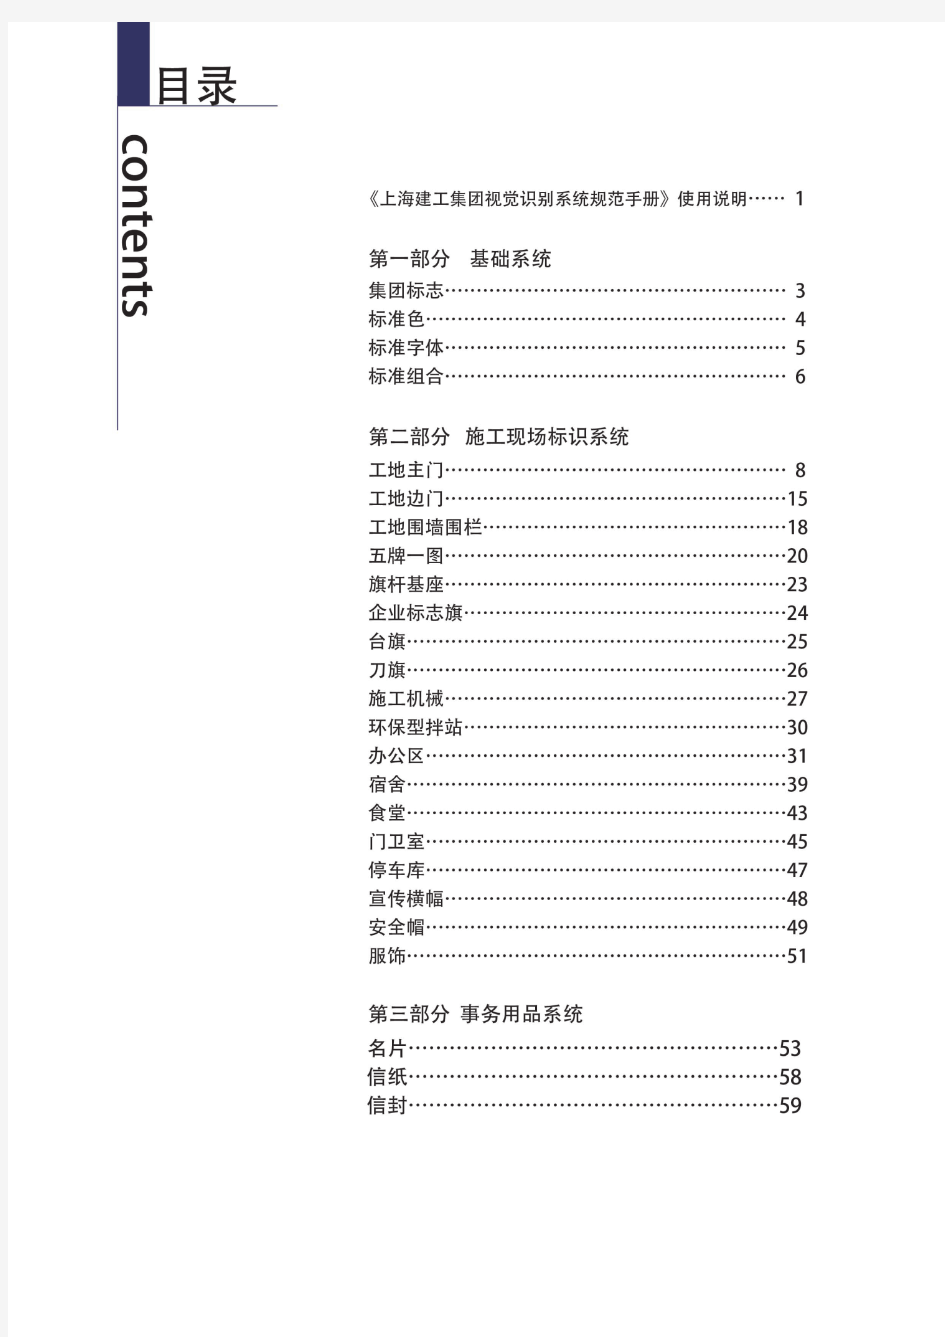 上海建工集团视觉识别规范手册